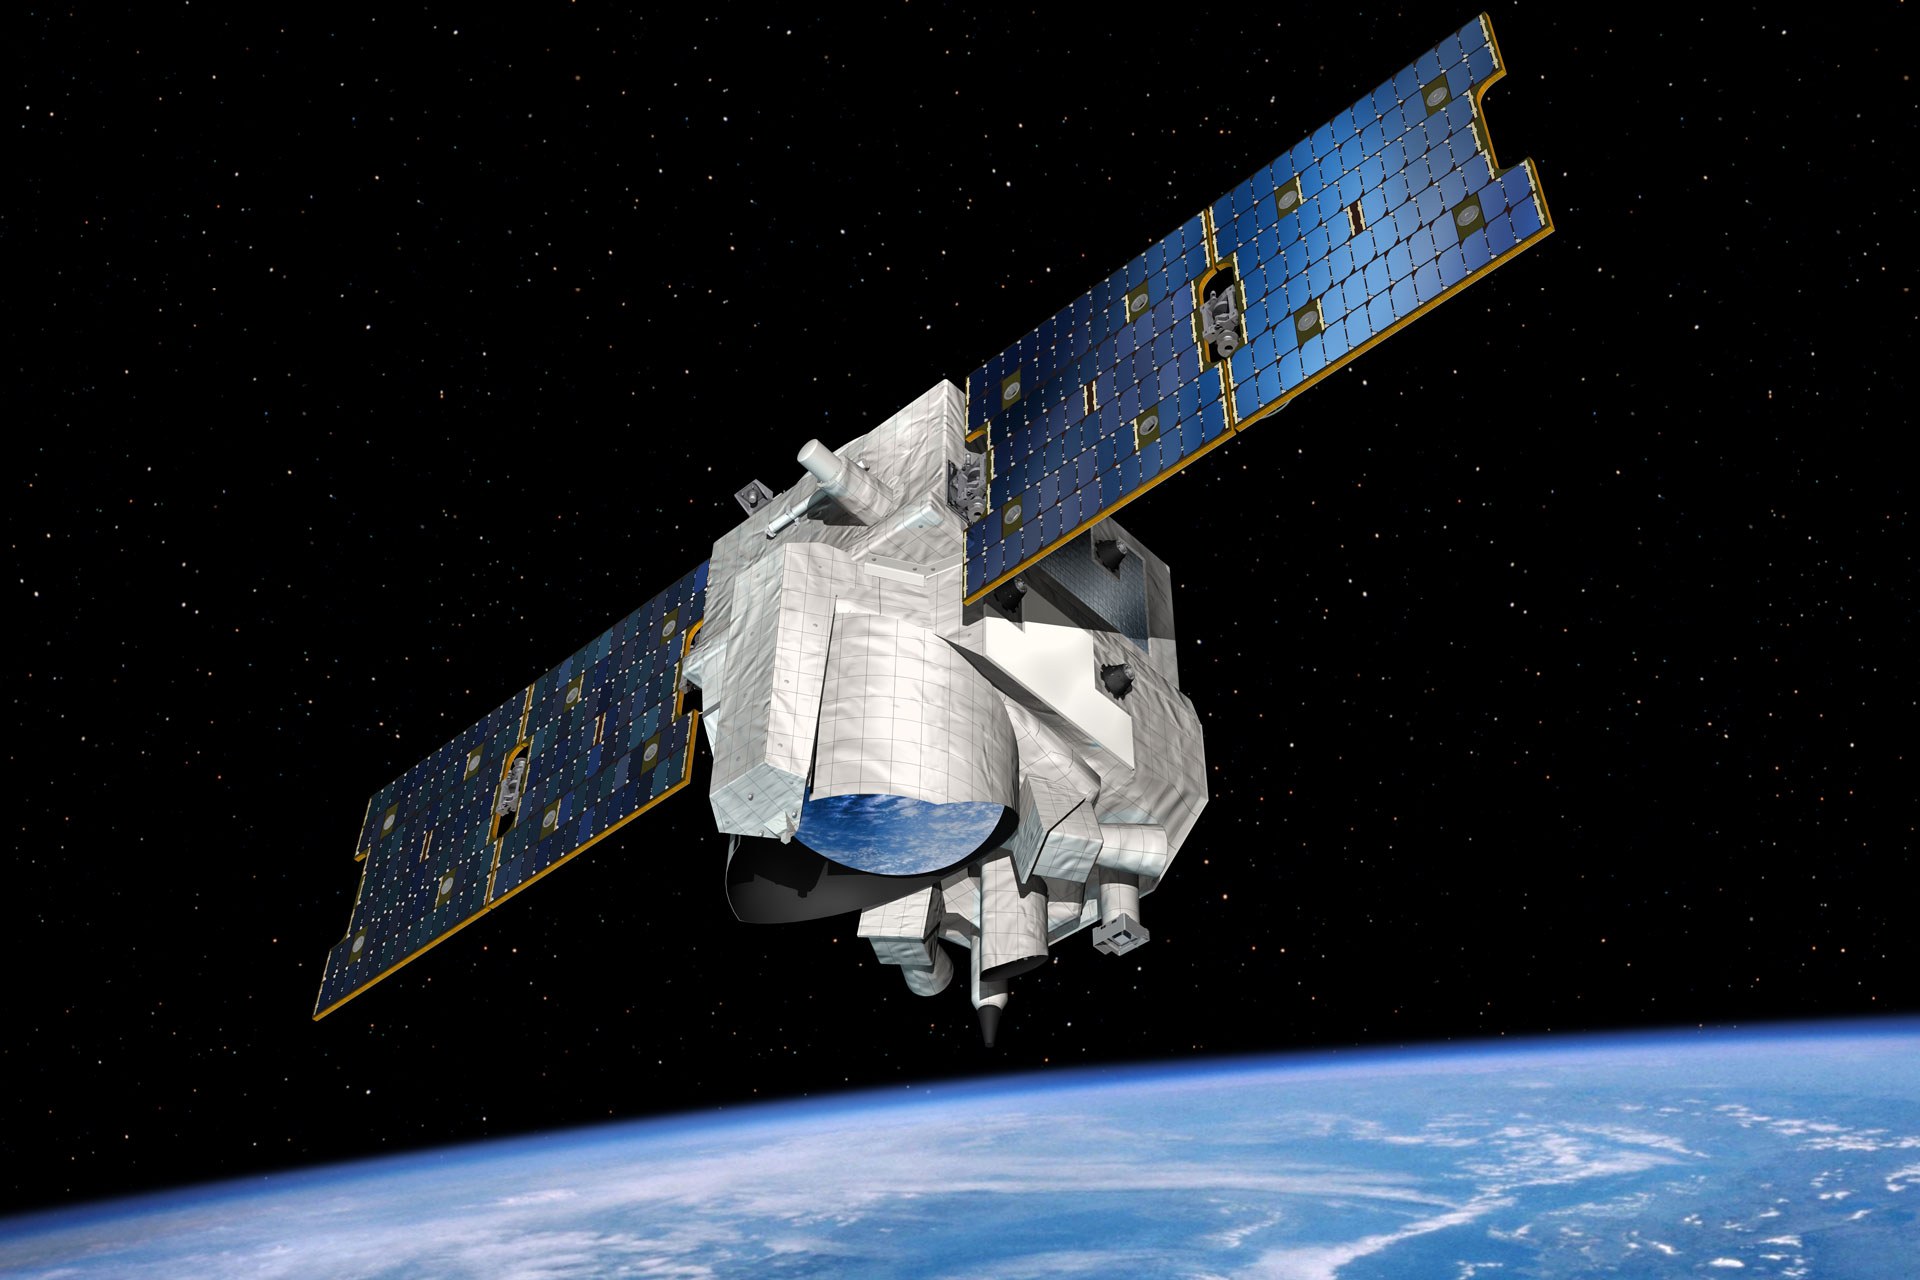 Der deutsch-französische Kleinsatellit MERLIN (Methane Remote Sensing Lidar Mission) soll das Treibhausgas Methan in der Erdatmosphäre beobachten.